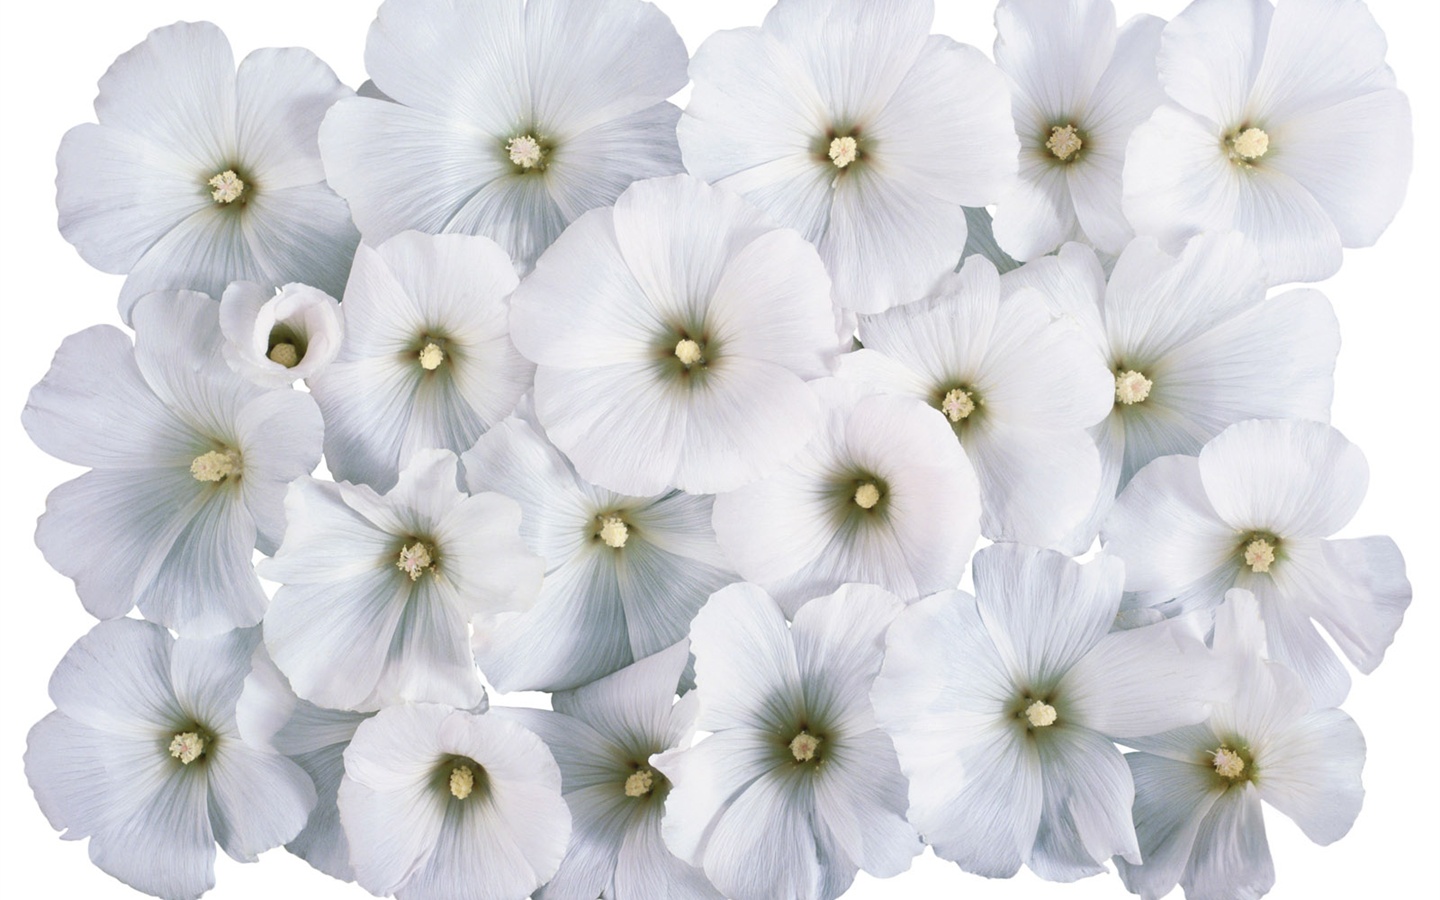 눈같이 흰 꽃 벽지 #4 - 1440x900